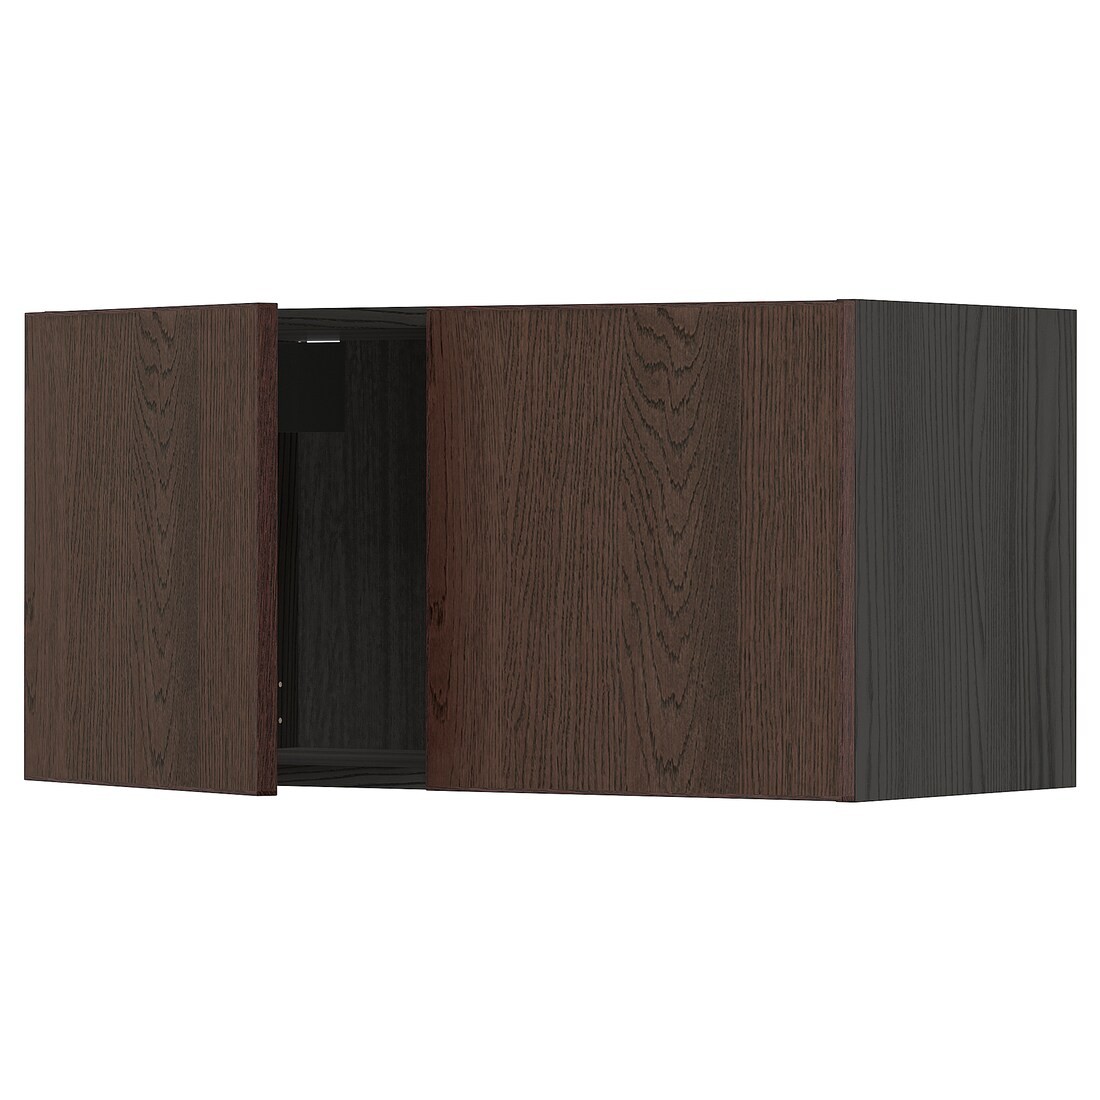 METOD МЕТОД Навесной шкаф с 2 дверями, черный / Sinarp коричневый, 80x40 см